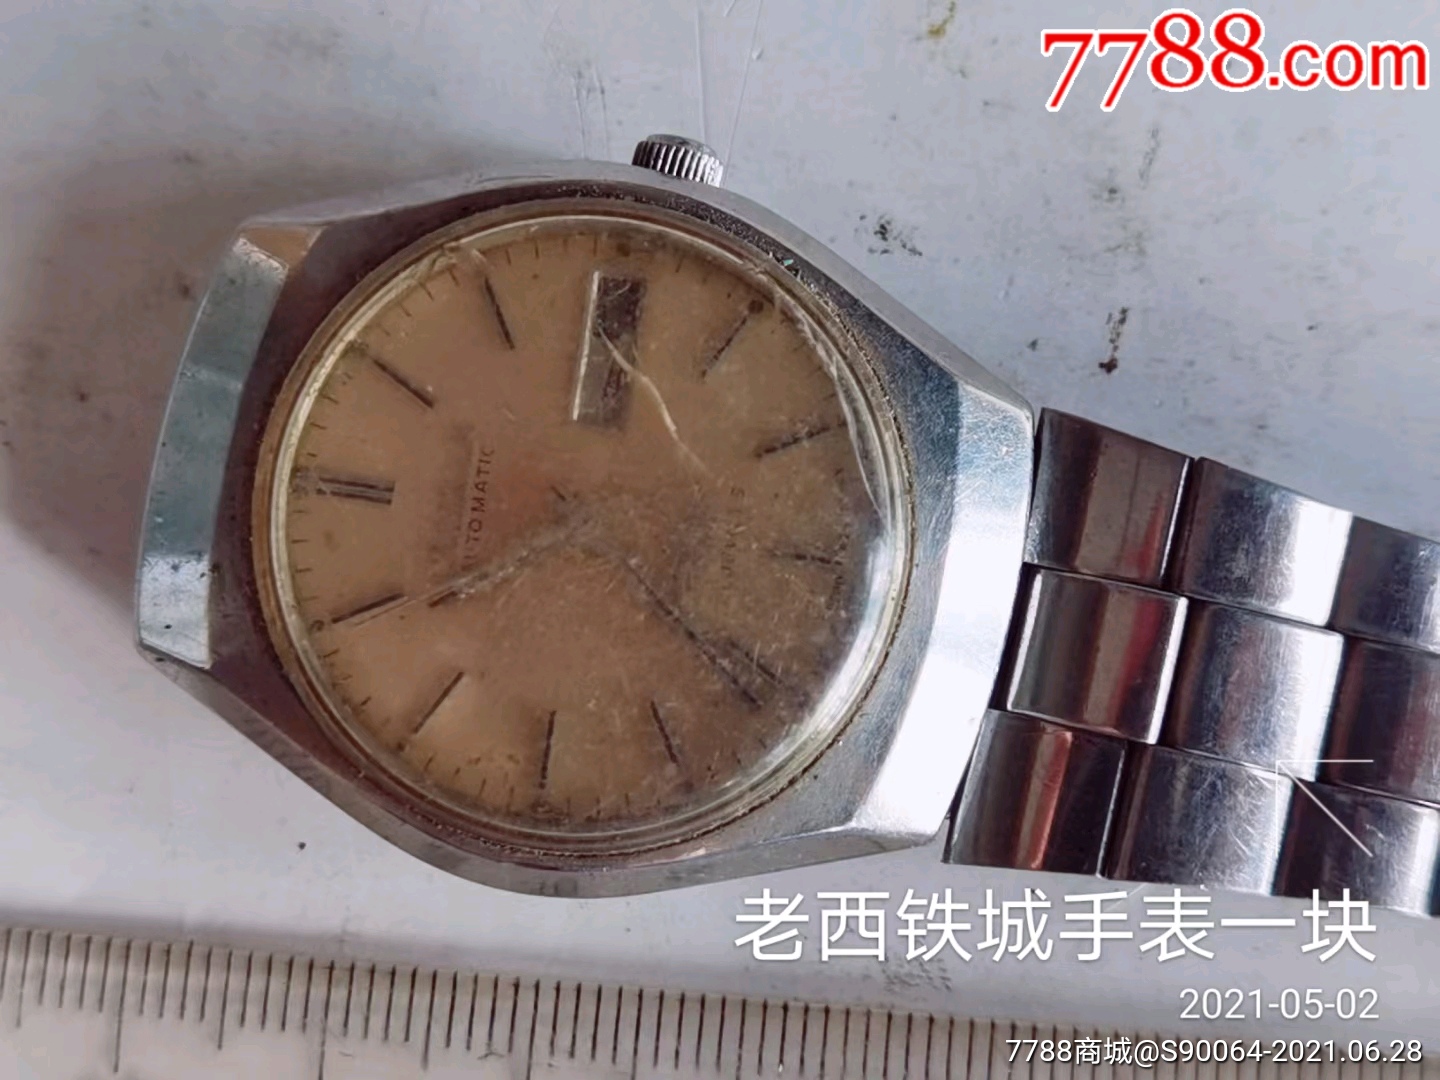 老西铁城手表一块-价格:35.0000元-se81099080-手表